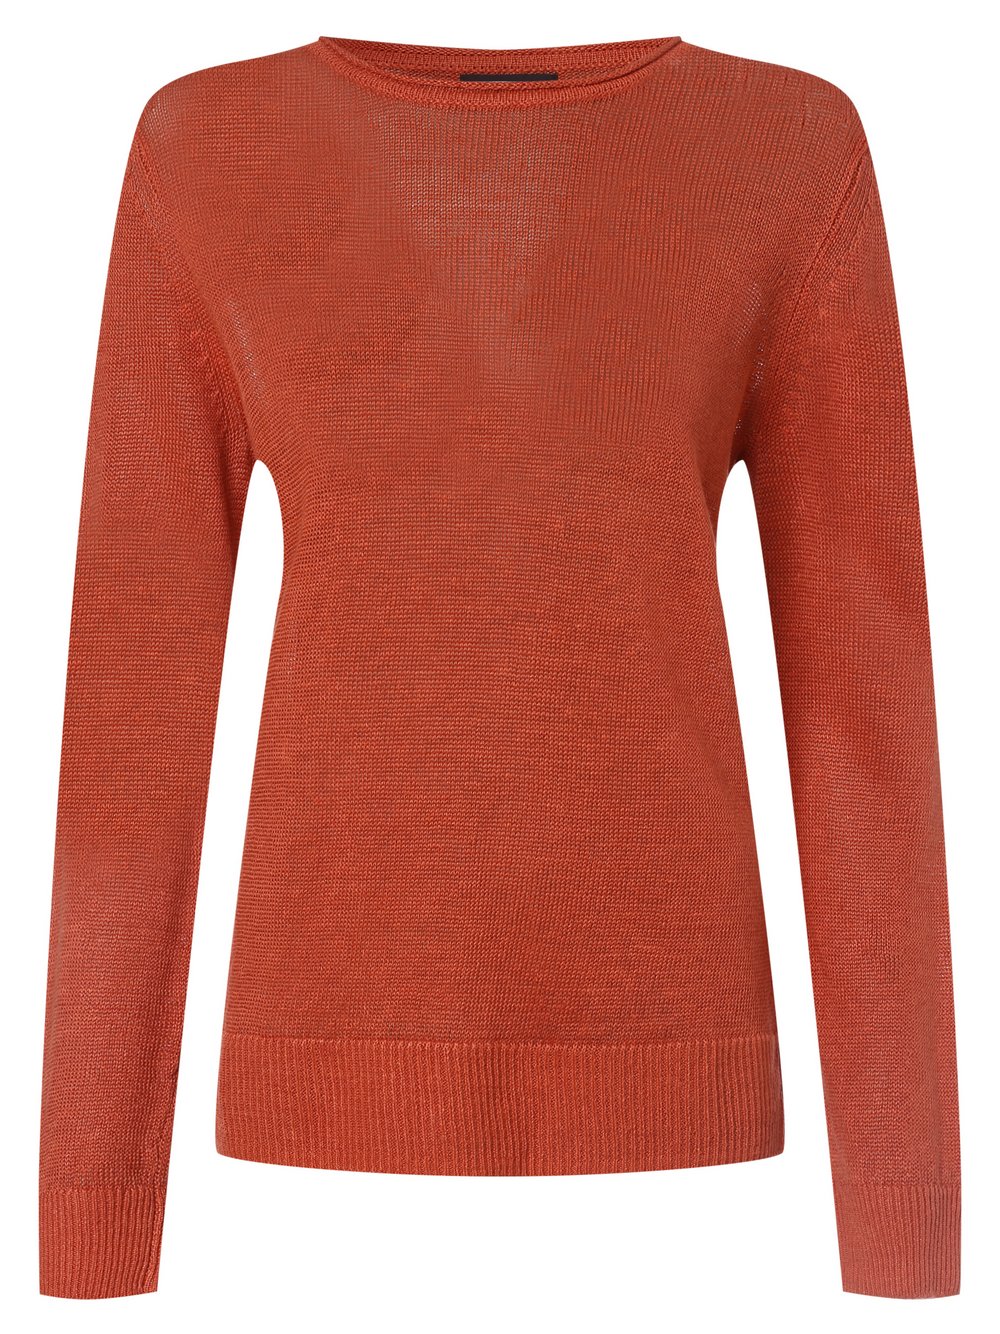 Franco Callegari - Damski sweter lniany, pomarańczowy